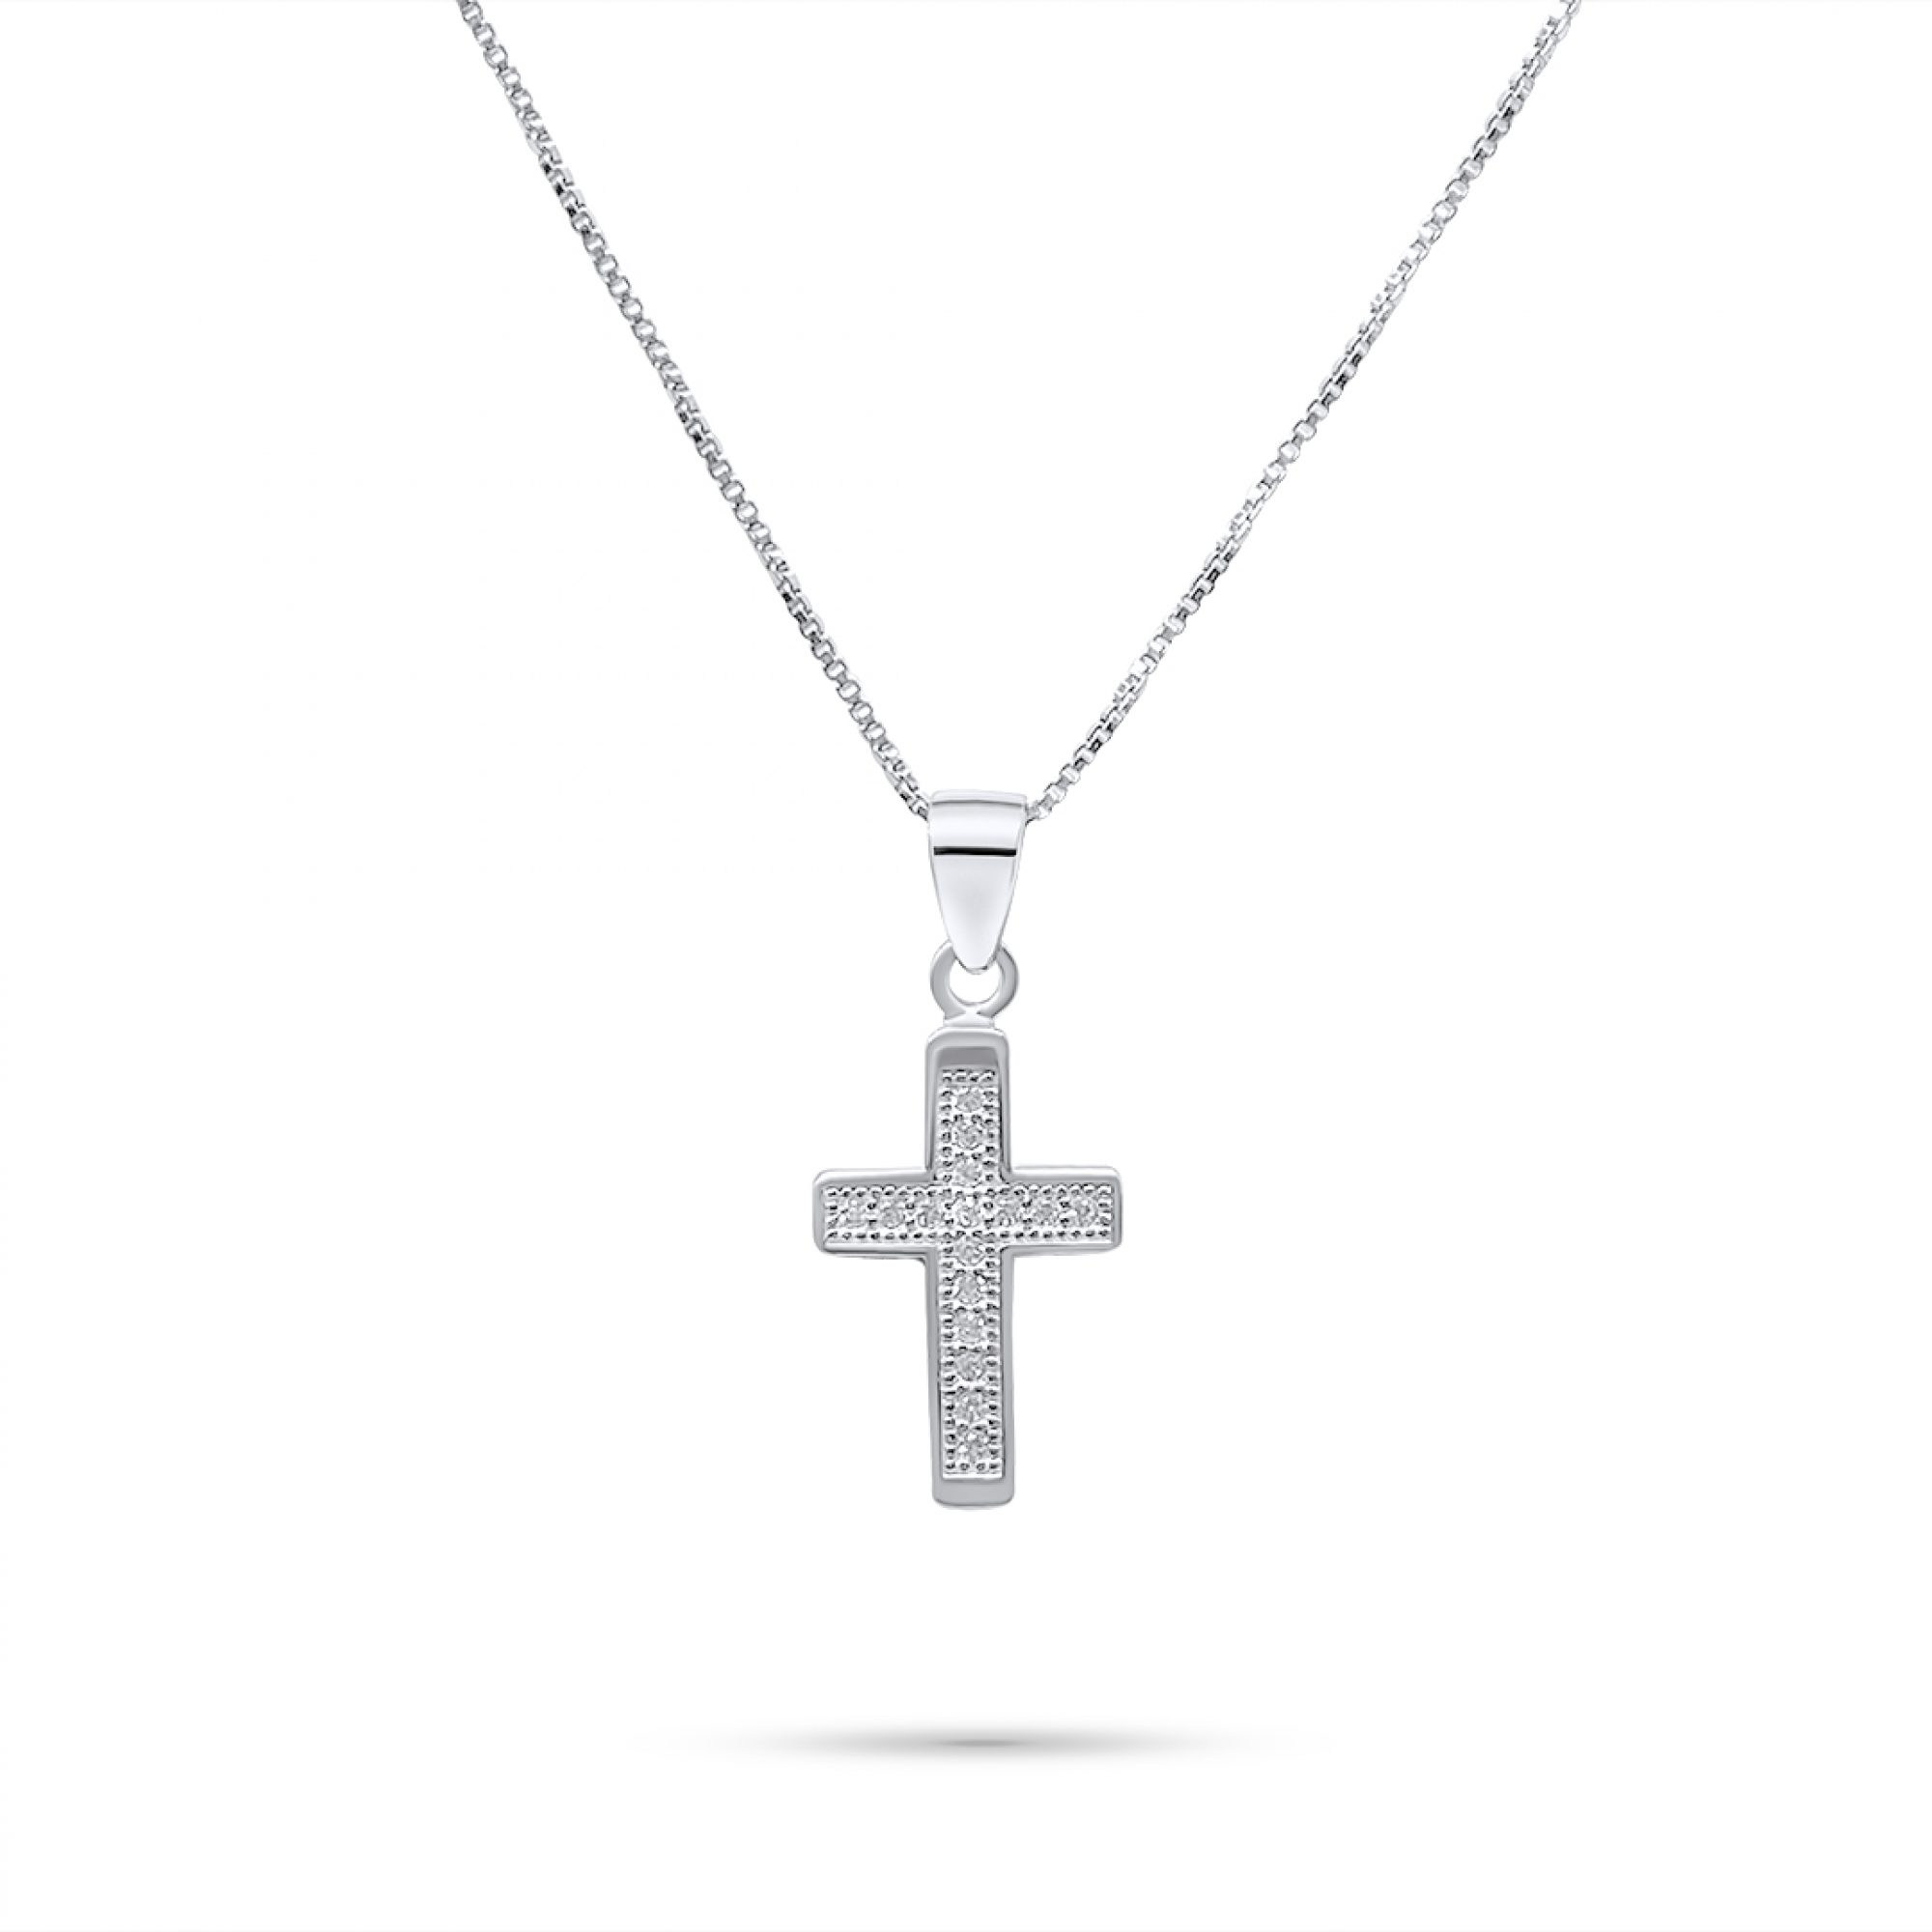 Cross necklace with zircon stones